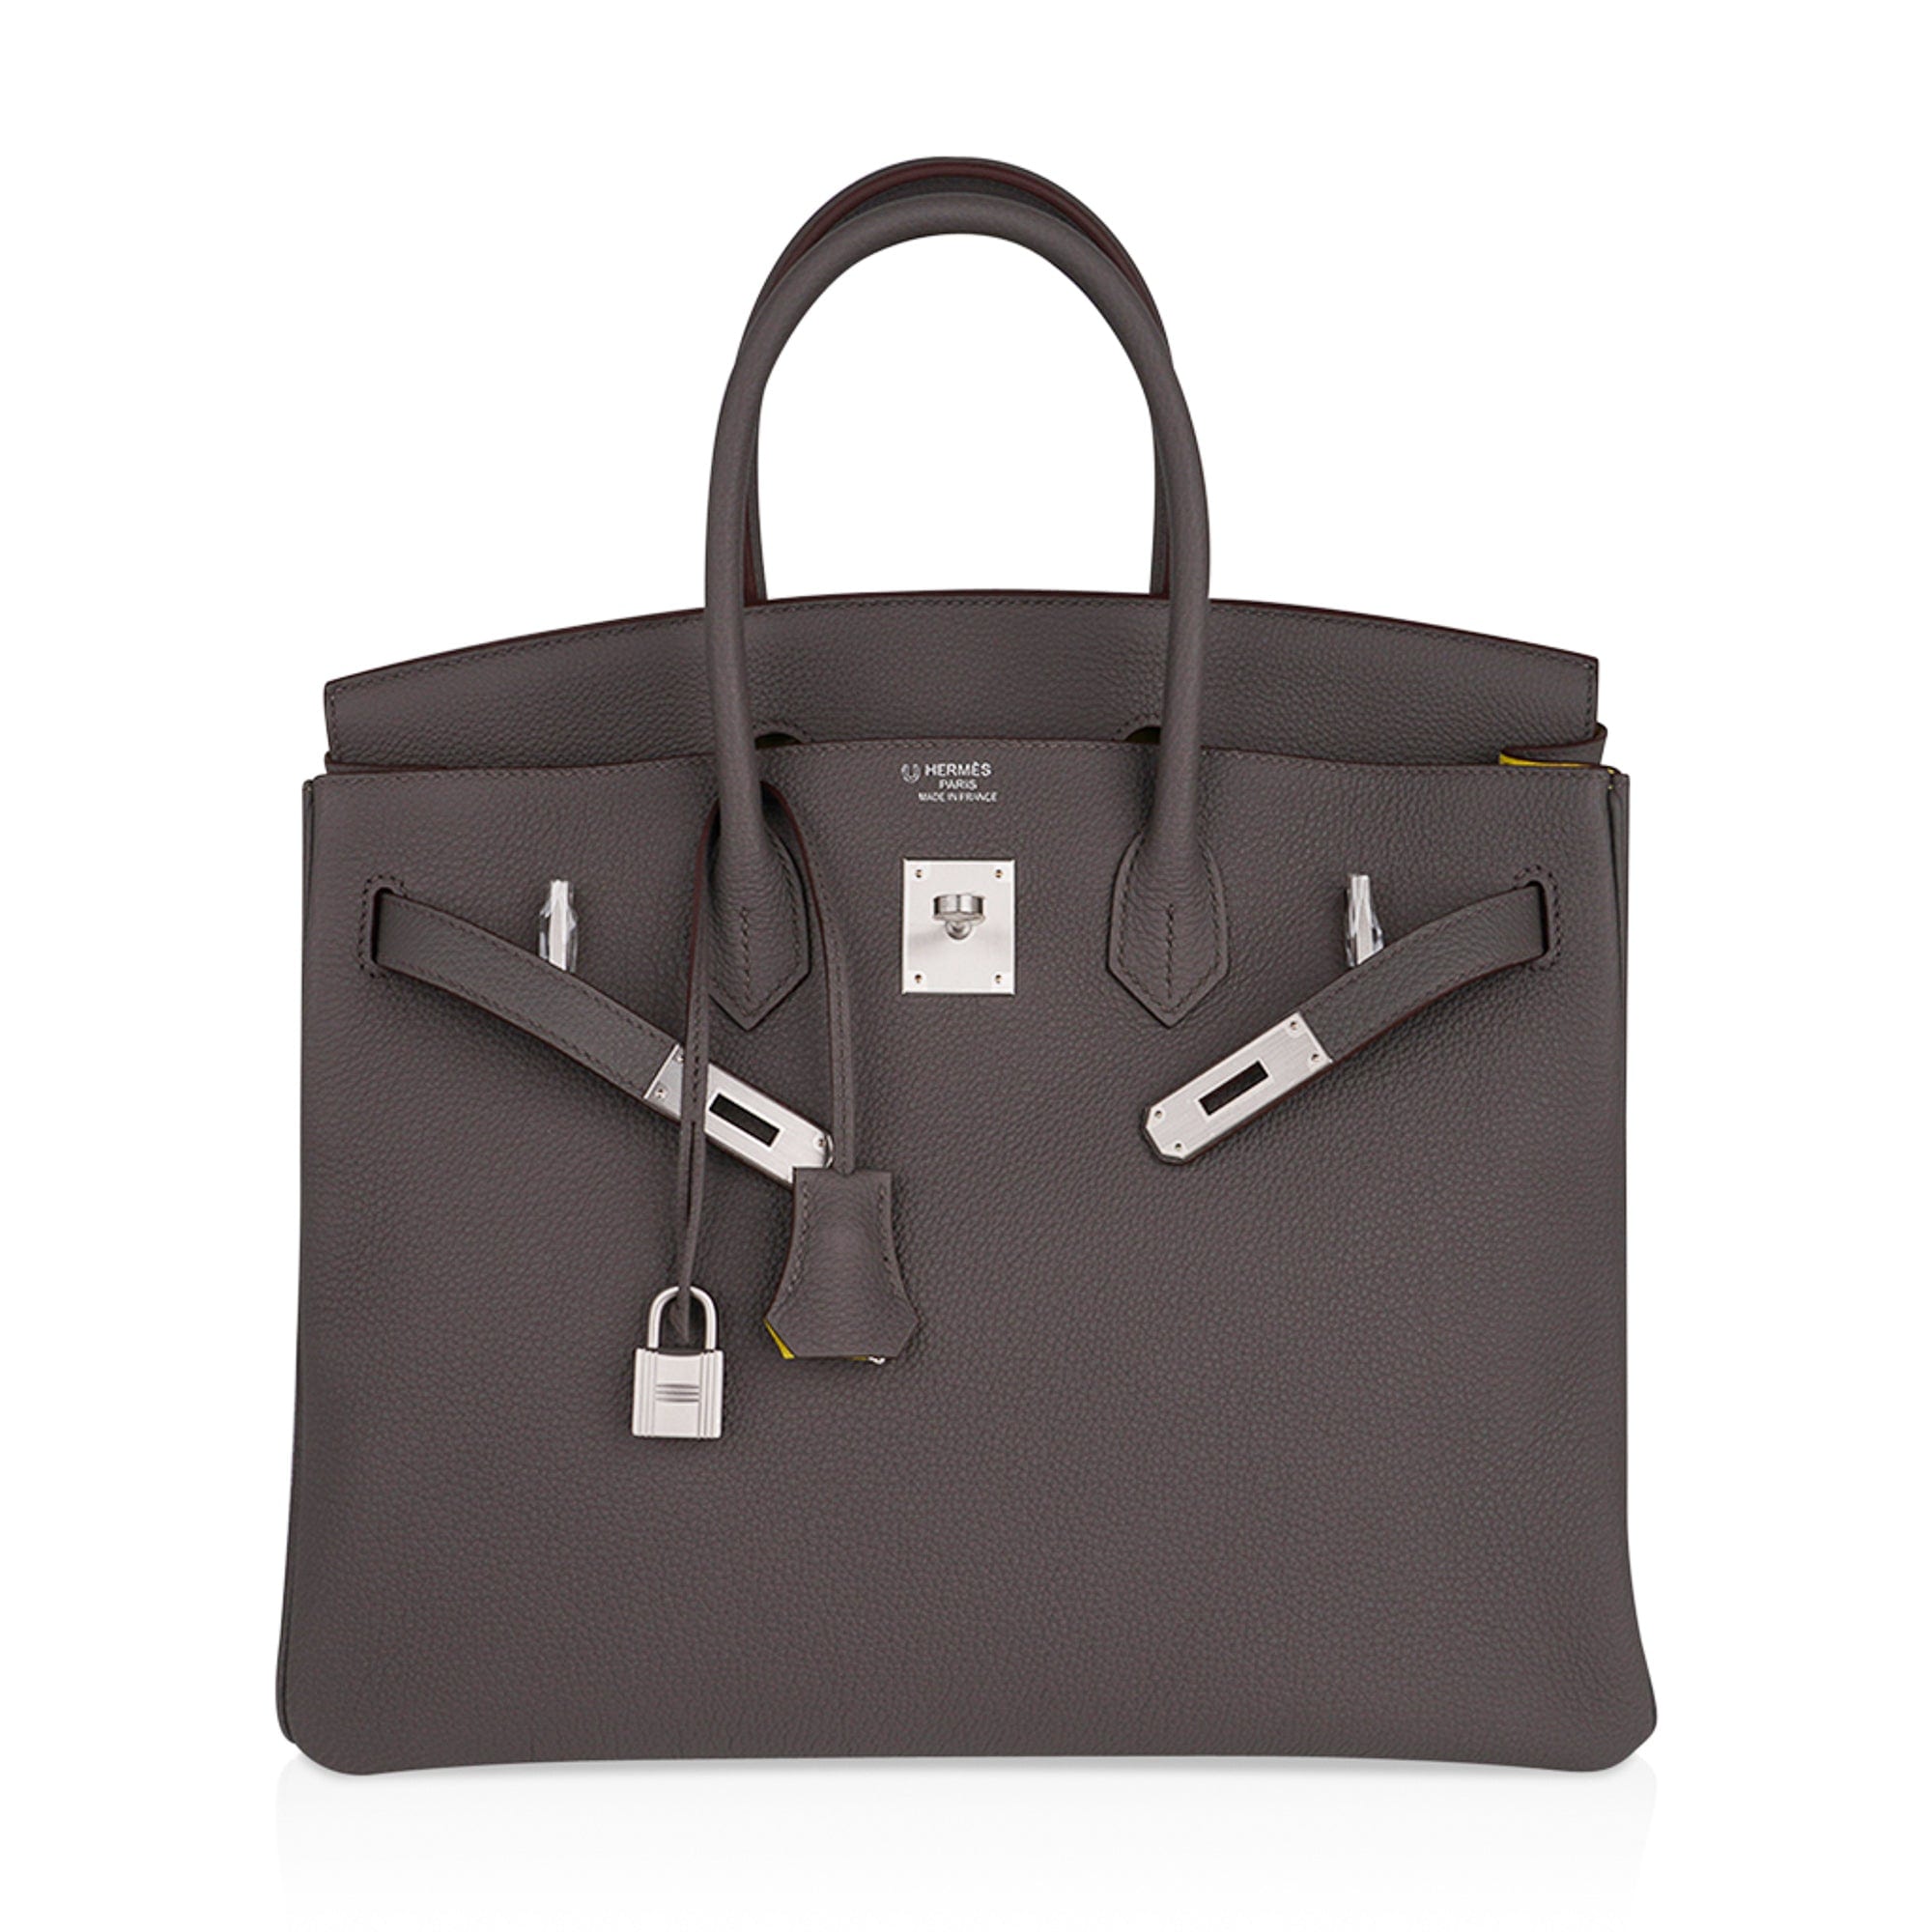 Louis Vuitton Brushed Palladium Lock & Key Set - Grey Bag